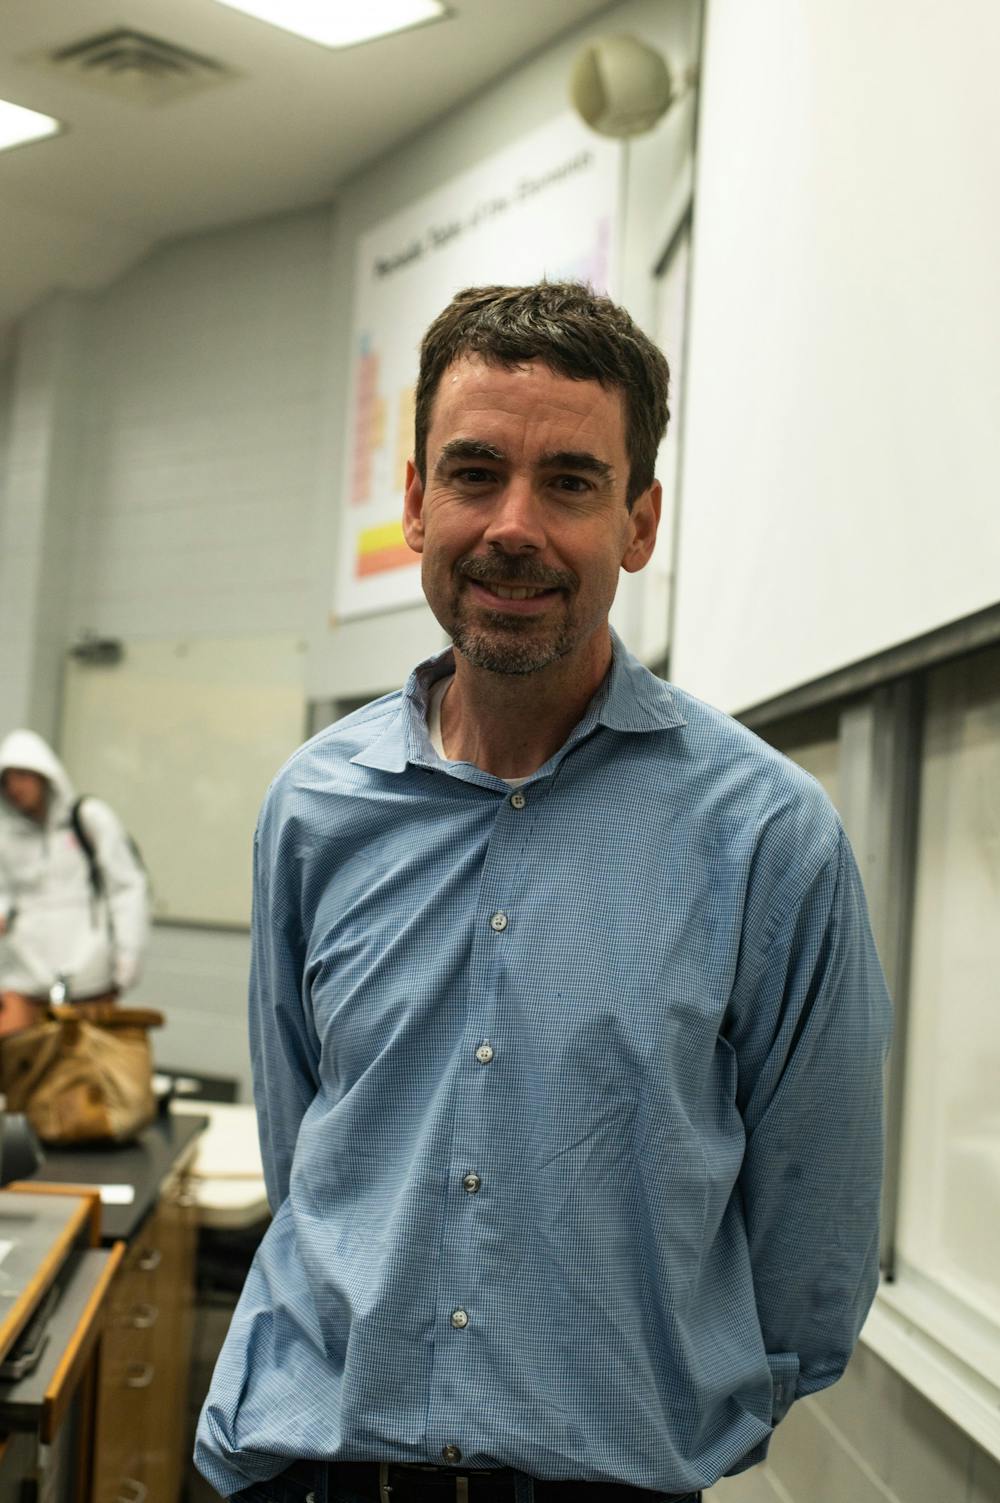 Plainsman's Choice 2022 Best Professor: Matt Kearley